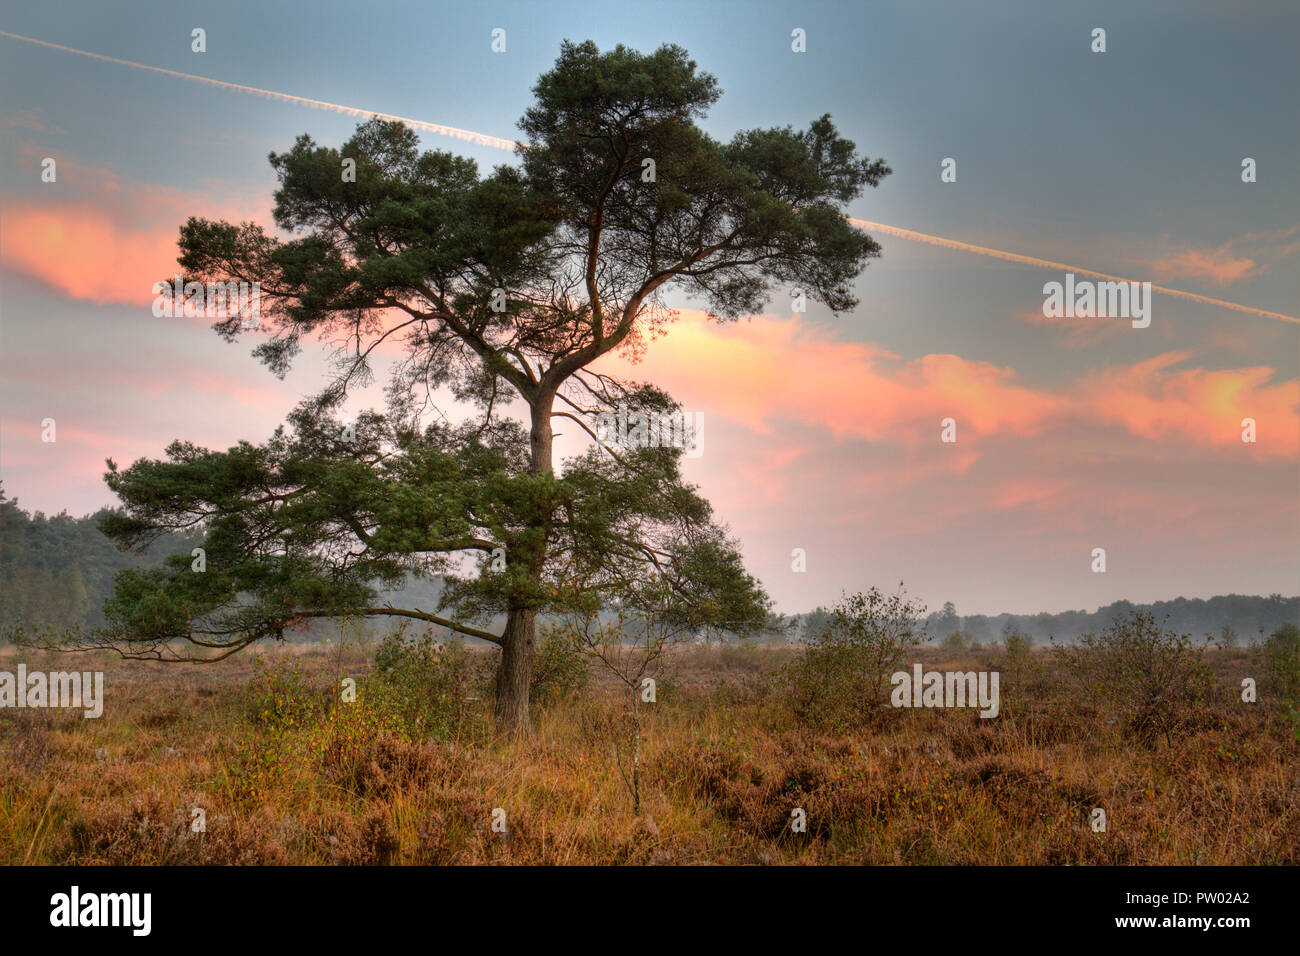 Föhren auf einer Heide am frühen Morgen, orange farbige Wolken und Kondensstreifen am Himmel Stockfoto